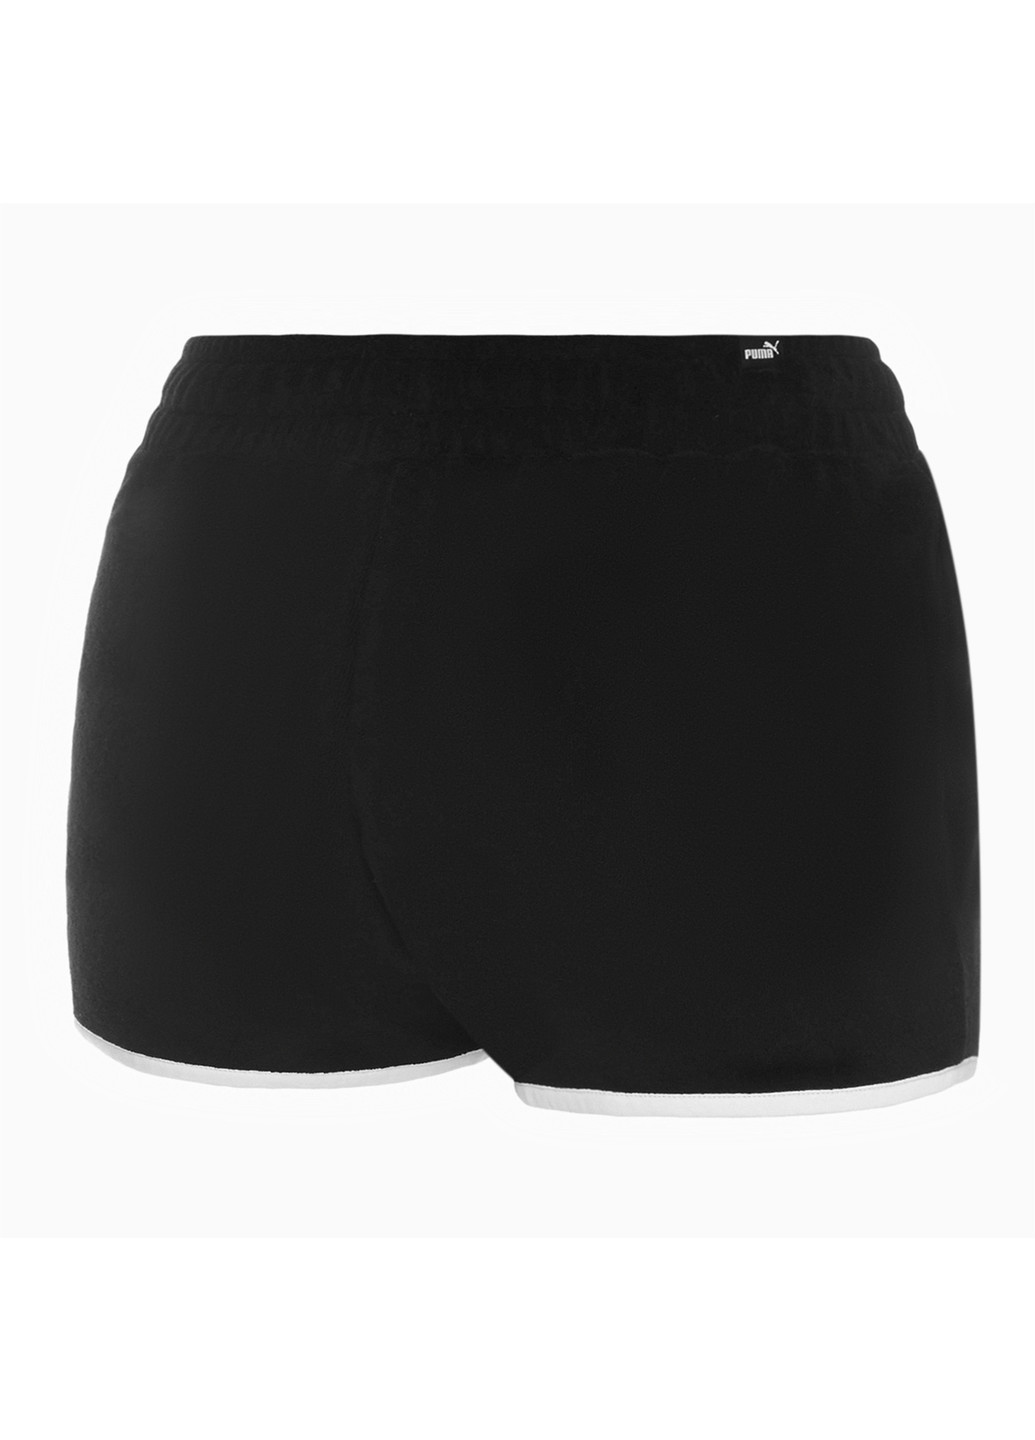 Шорты Towel Shorts Puma чёрные спортивные